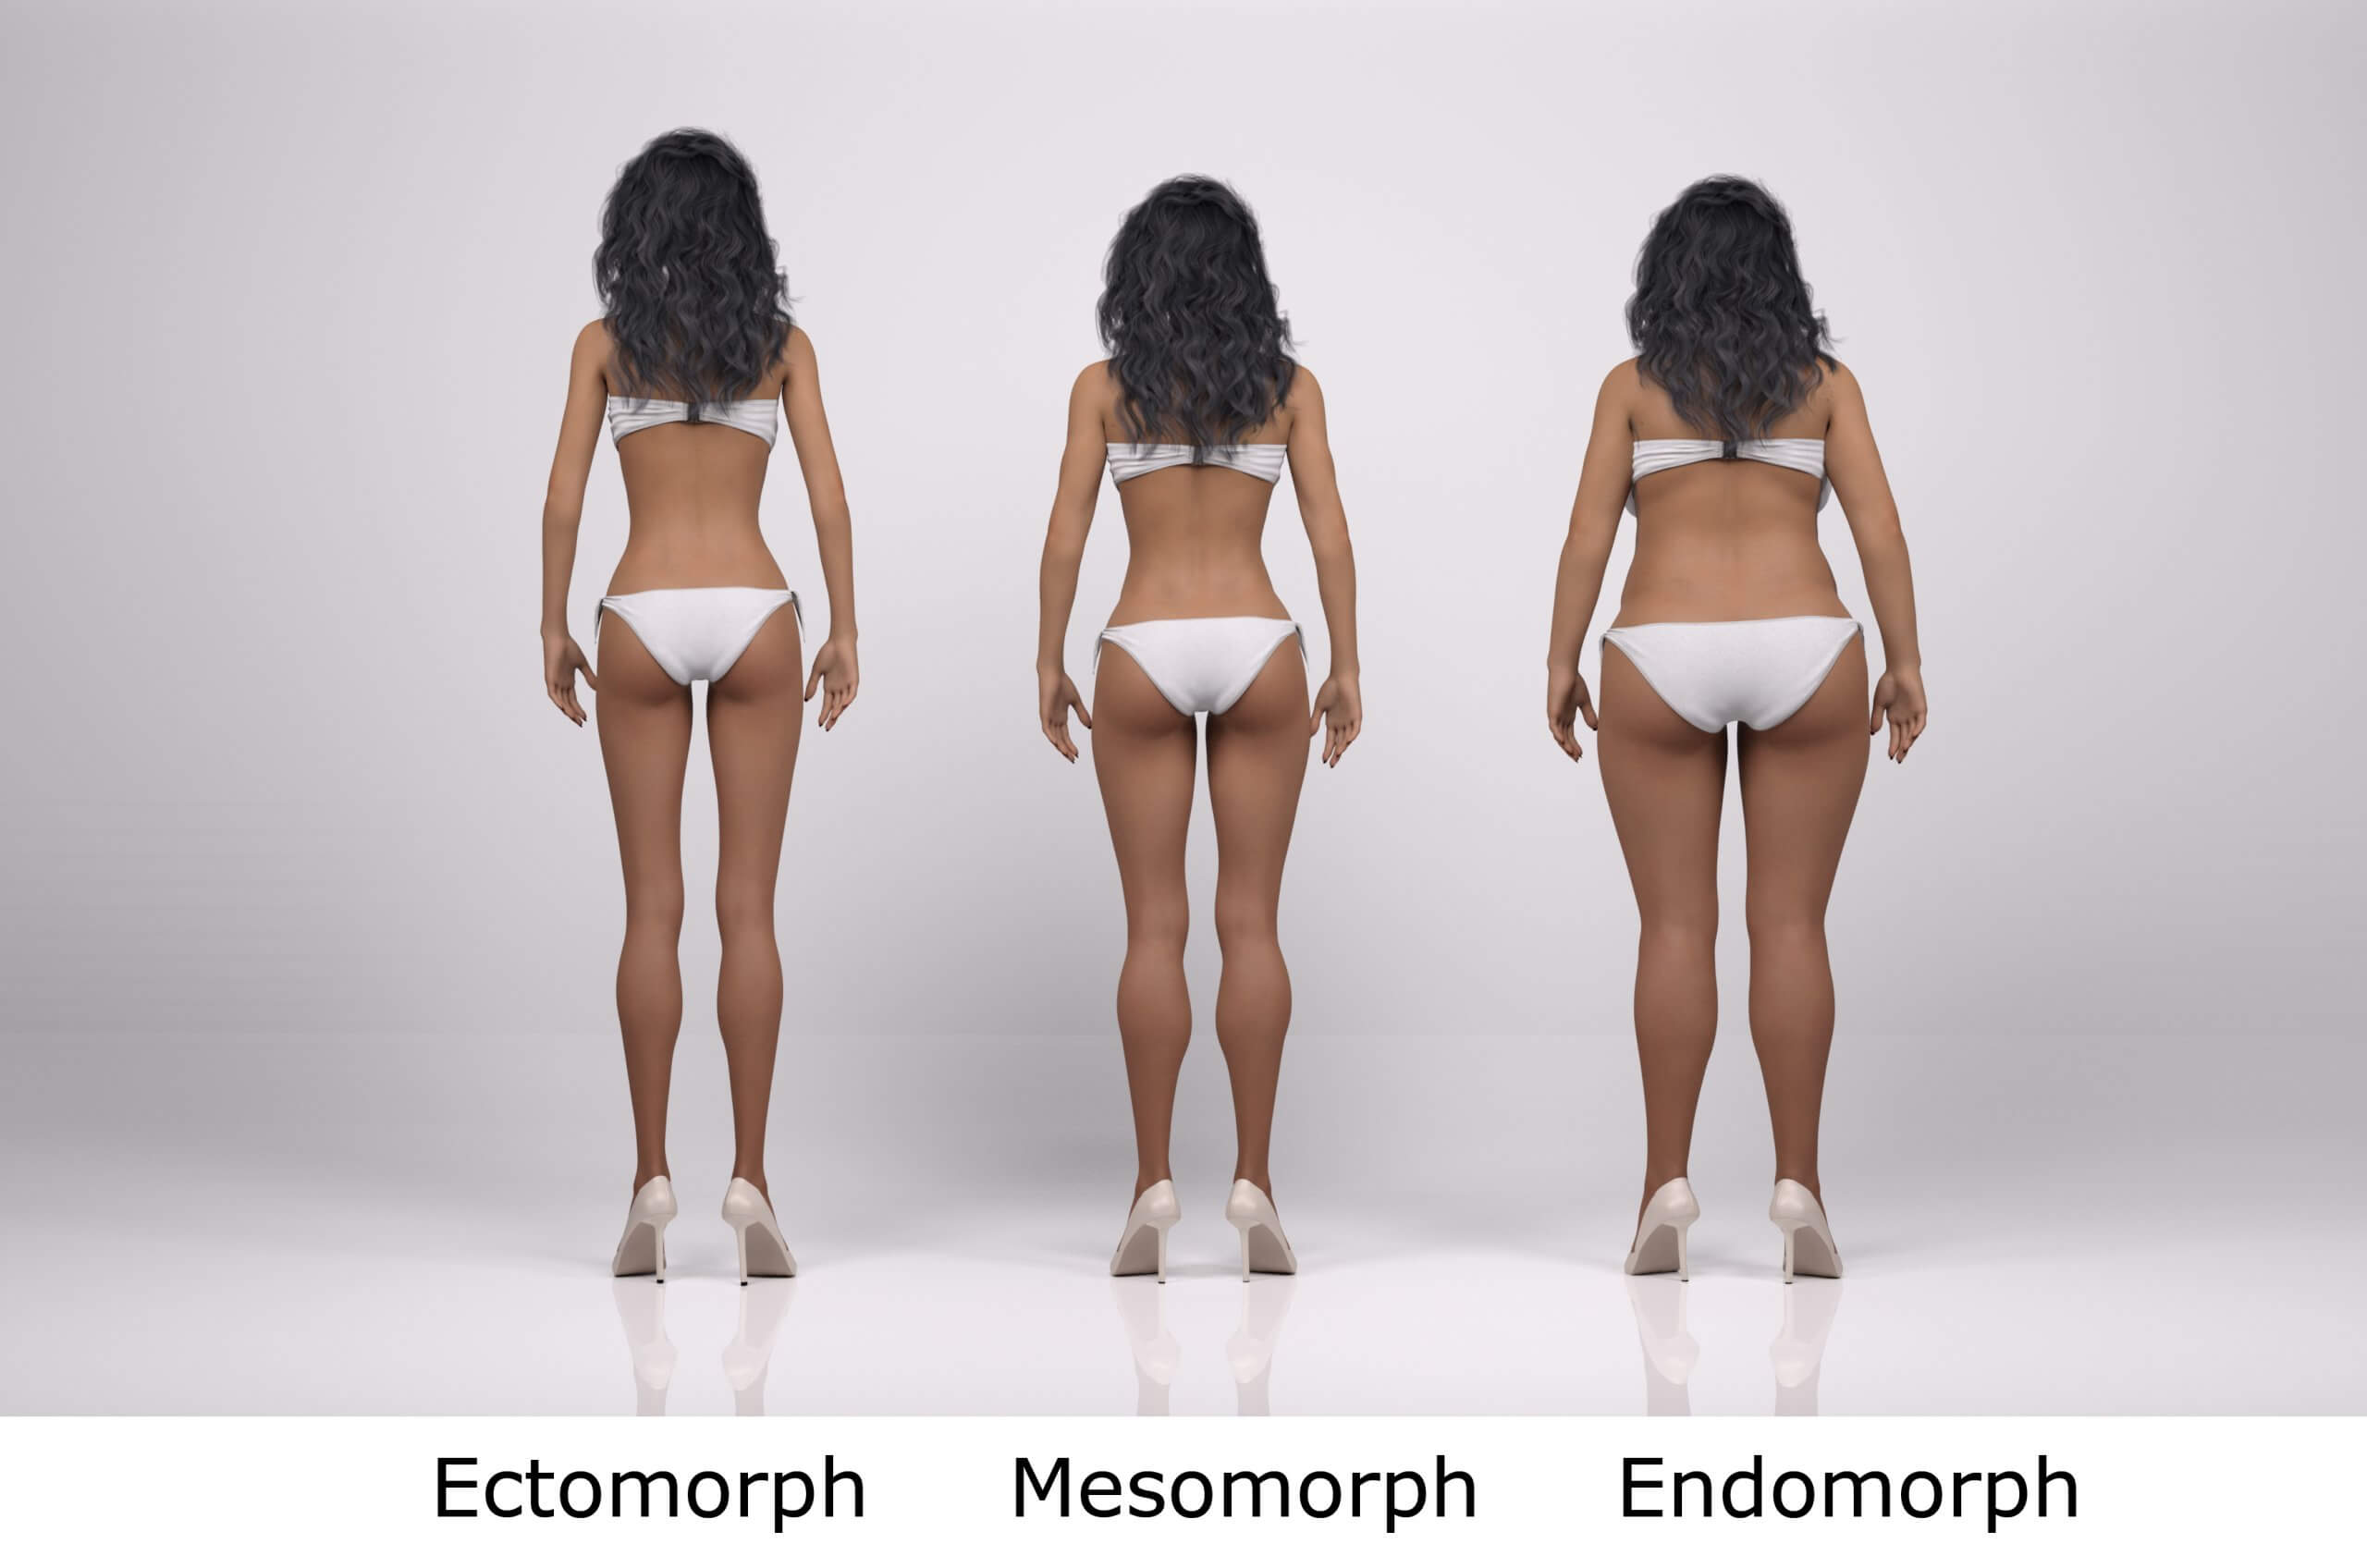 female body types